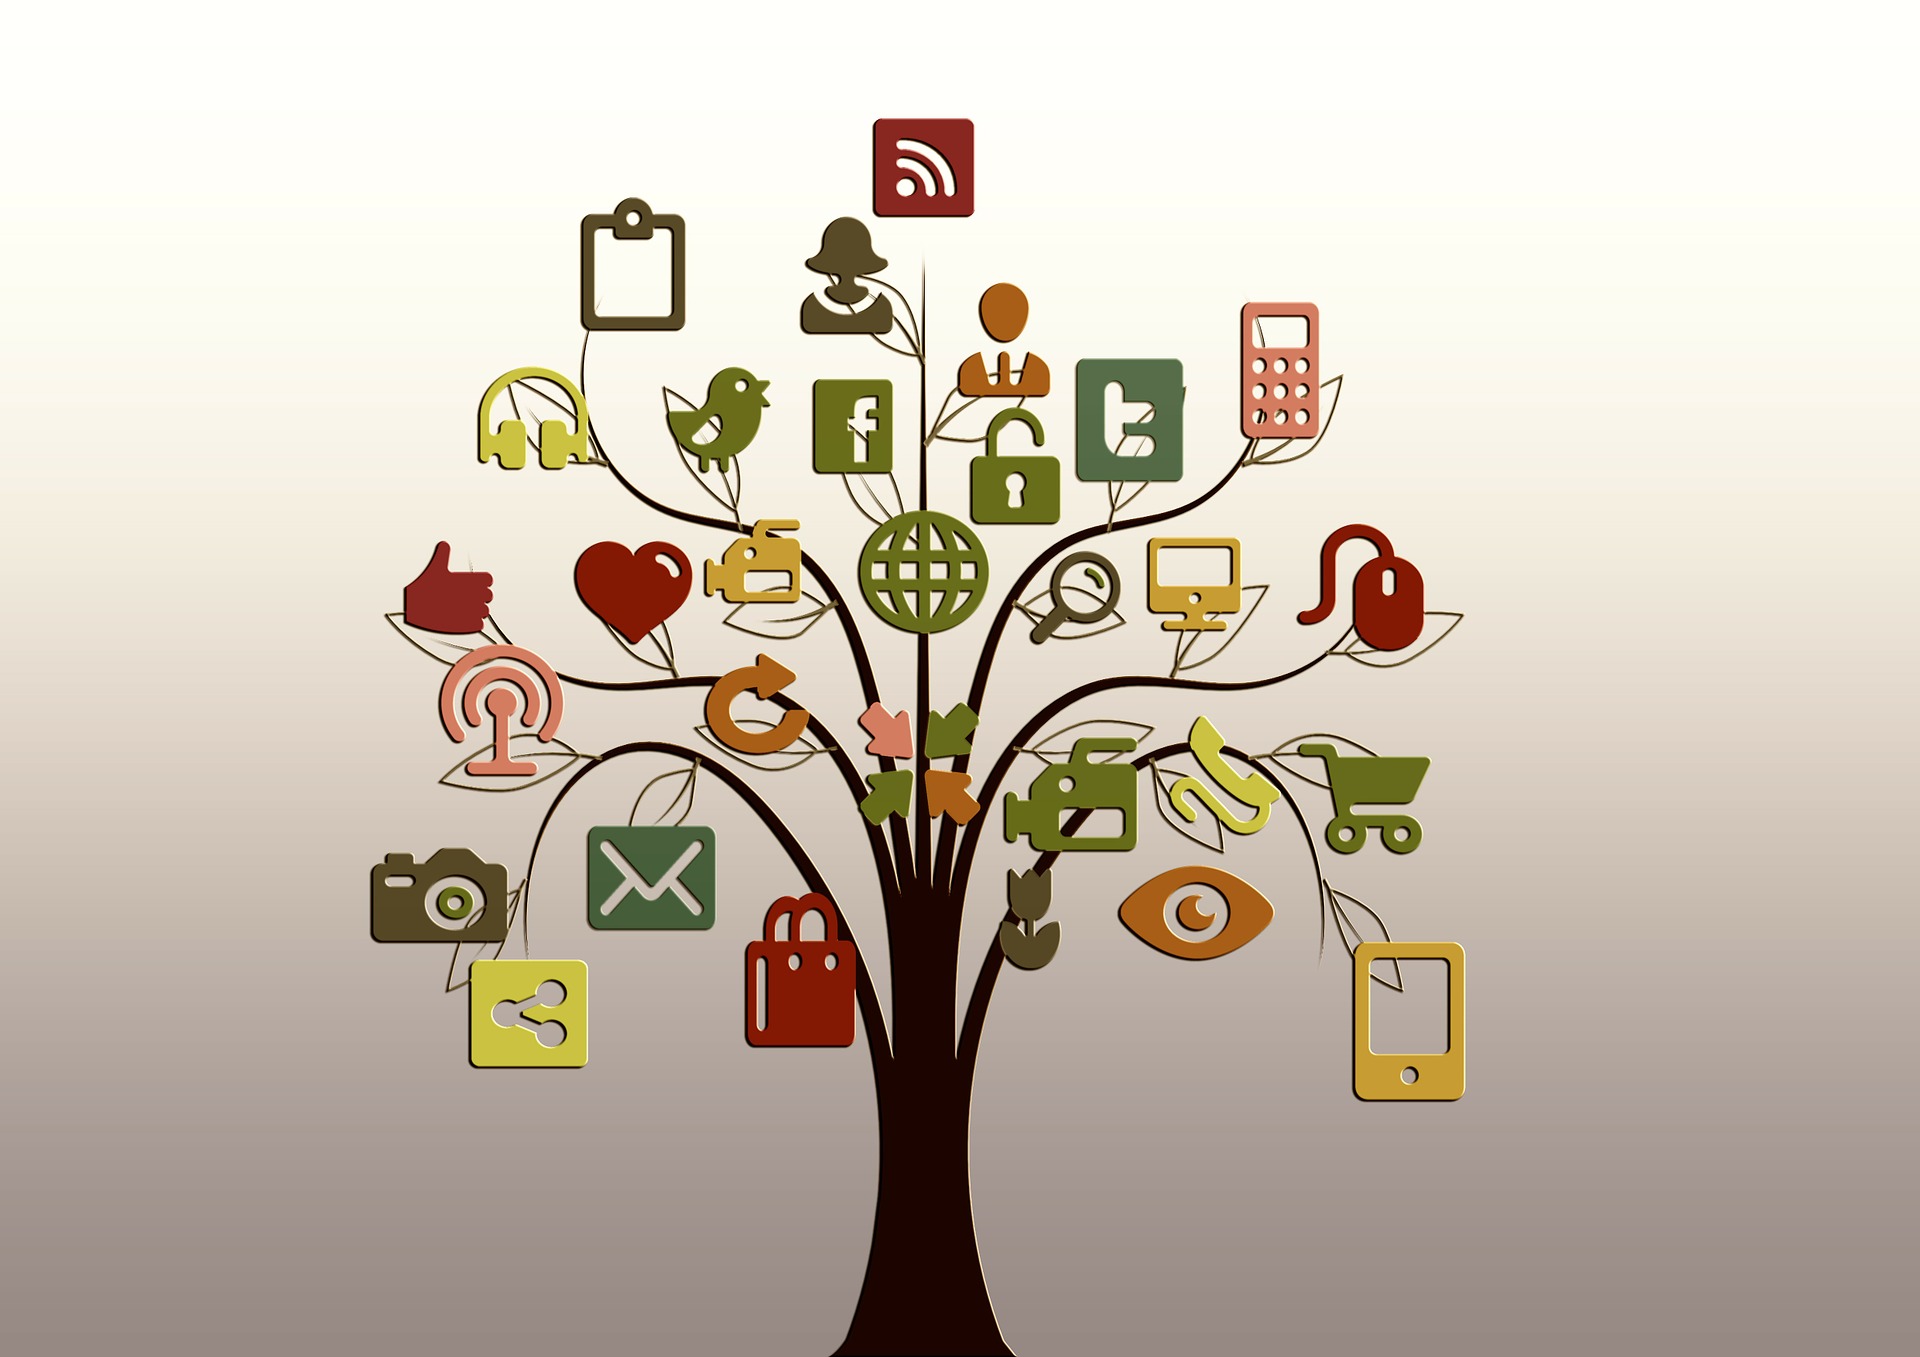 A Tree of Social Media